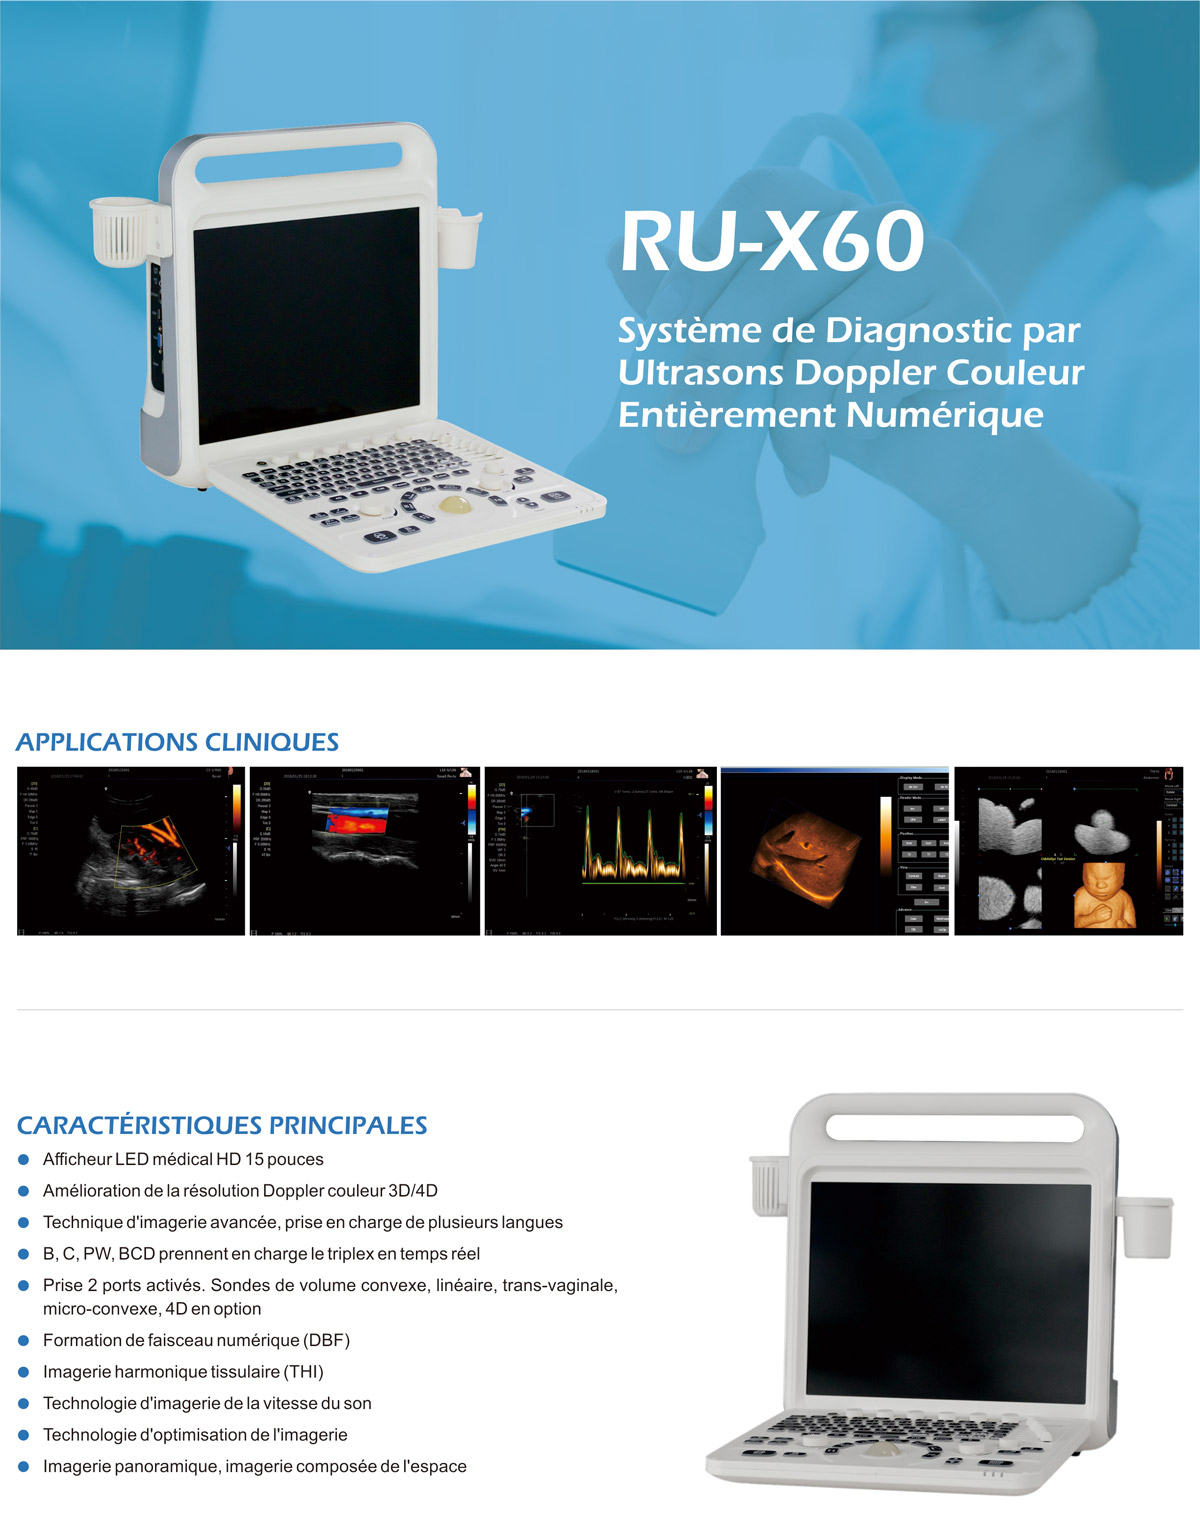 RU-X60法语1.jpg